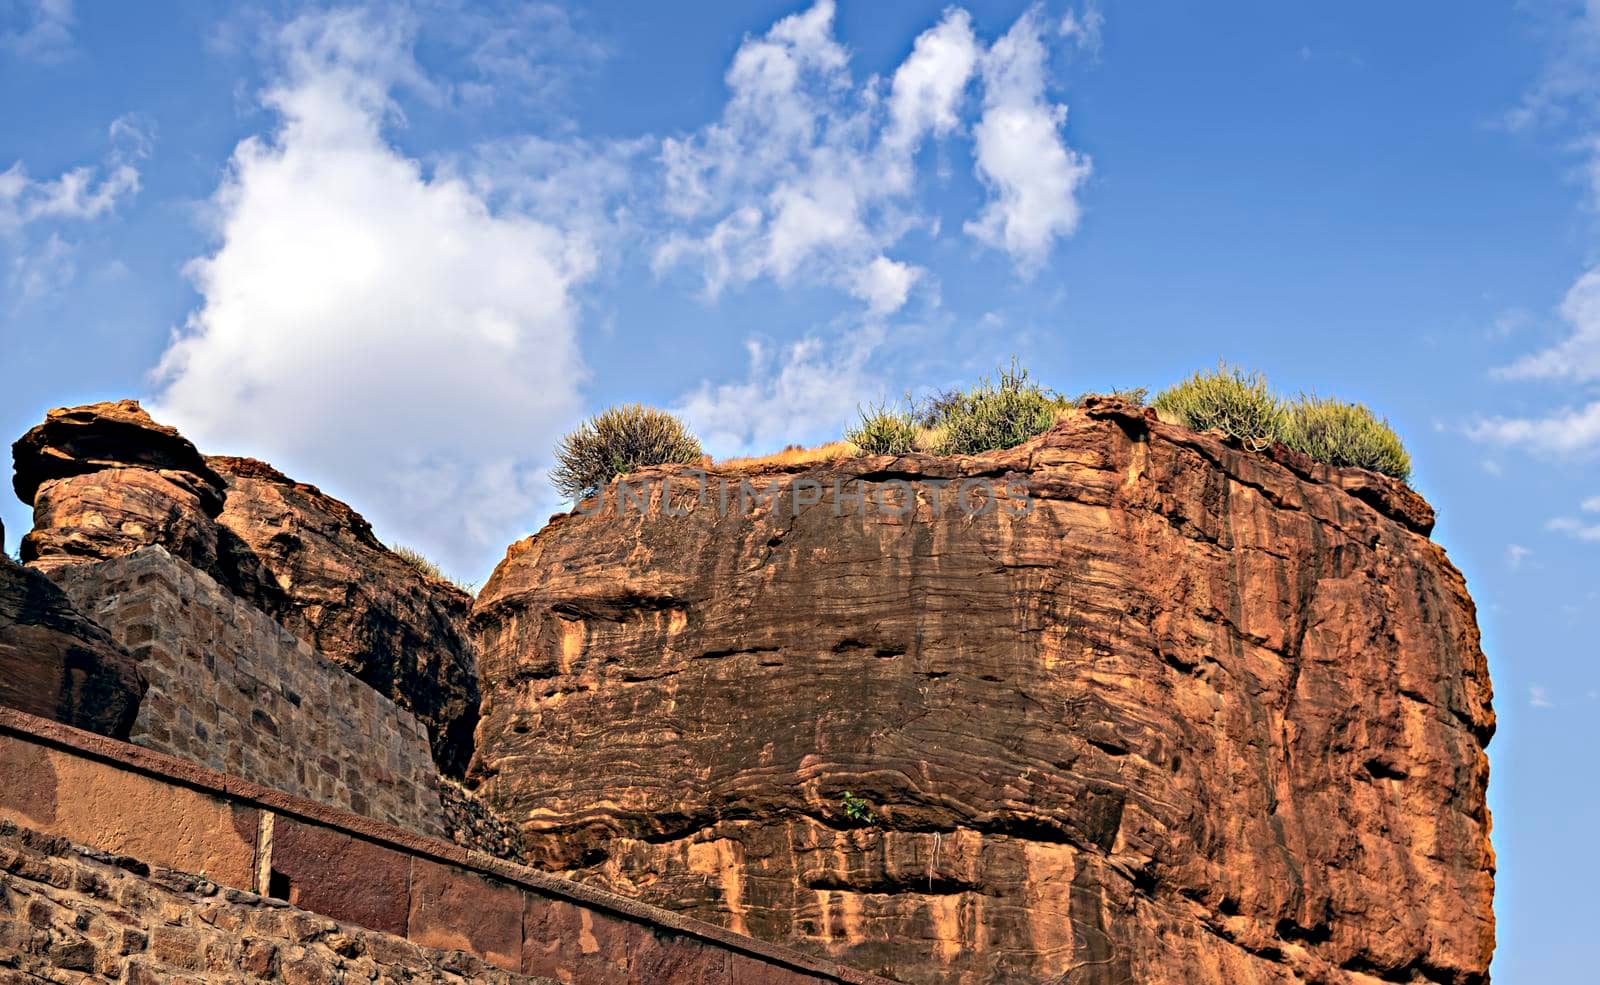 Huge rock on hill at Badami, Karnataka, India. by lalam